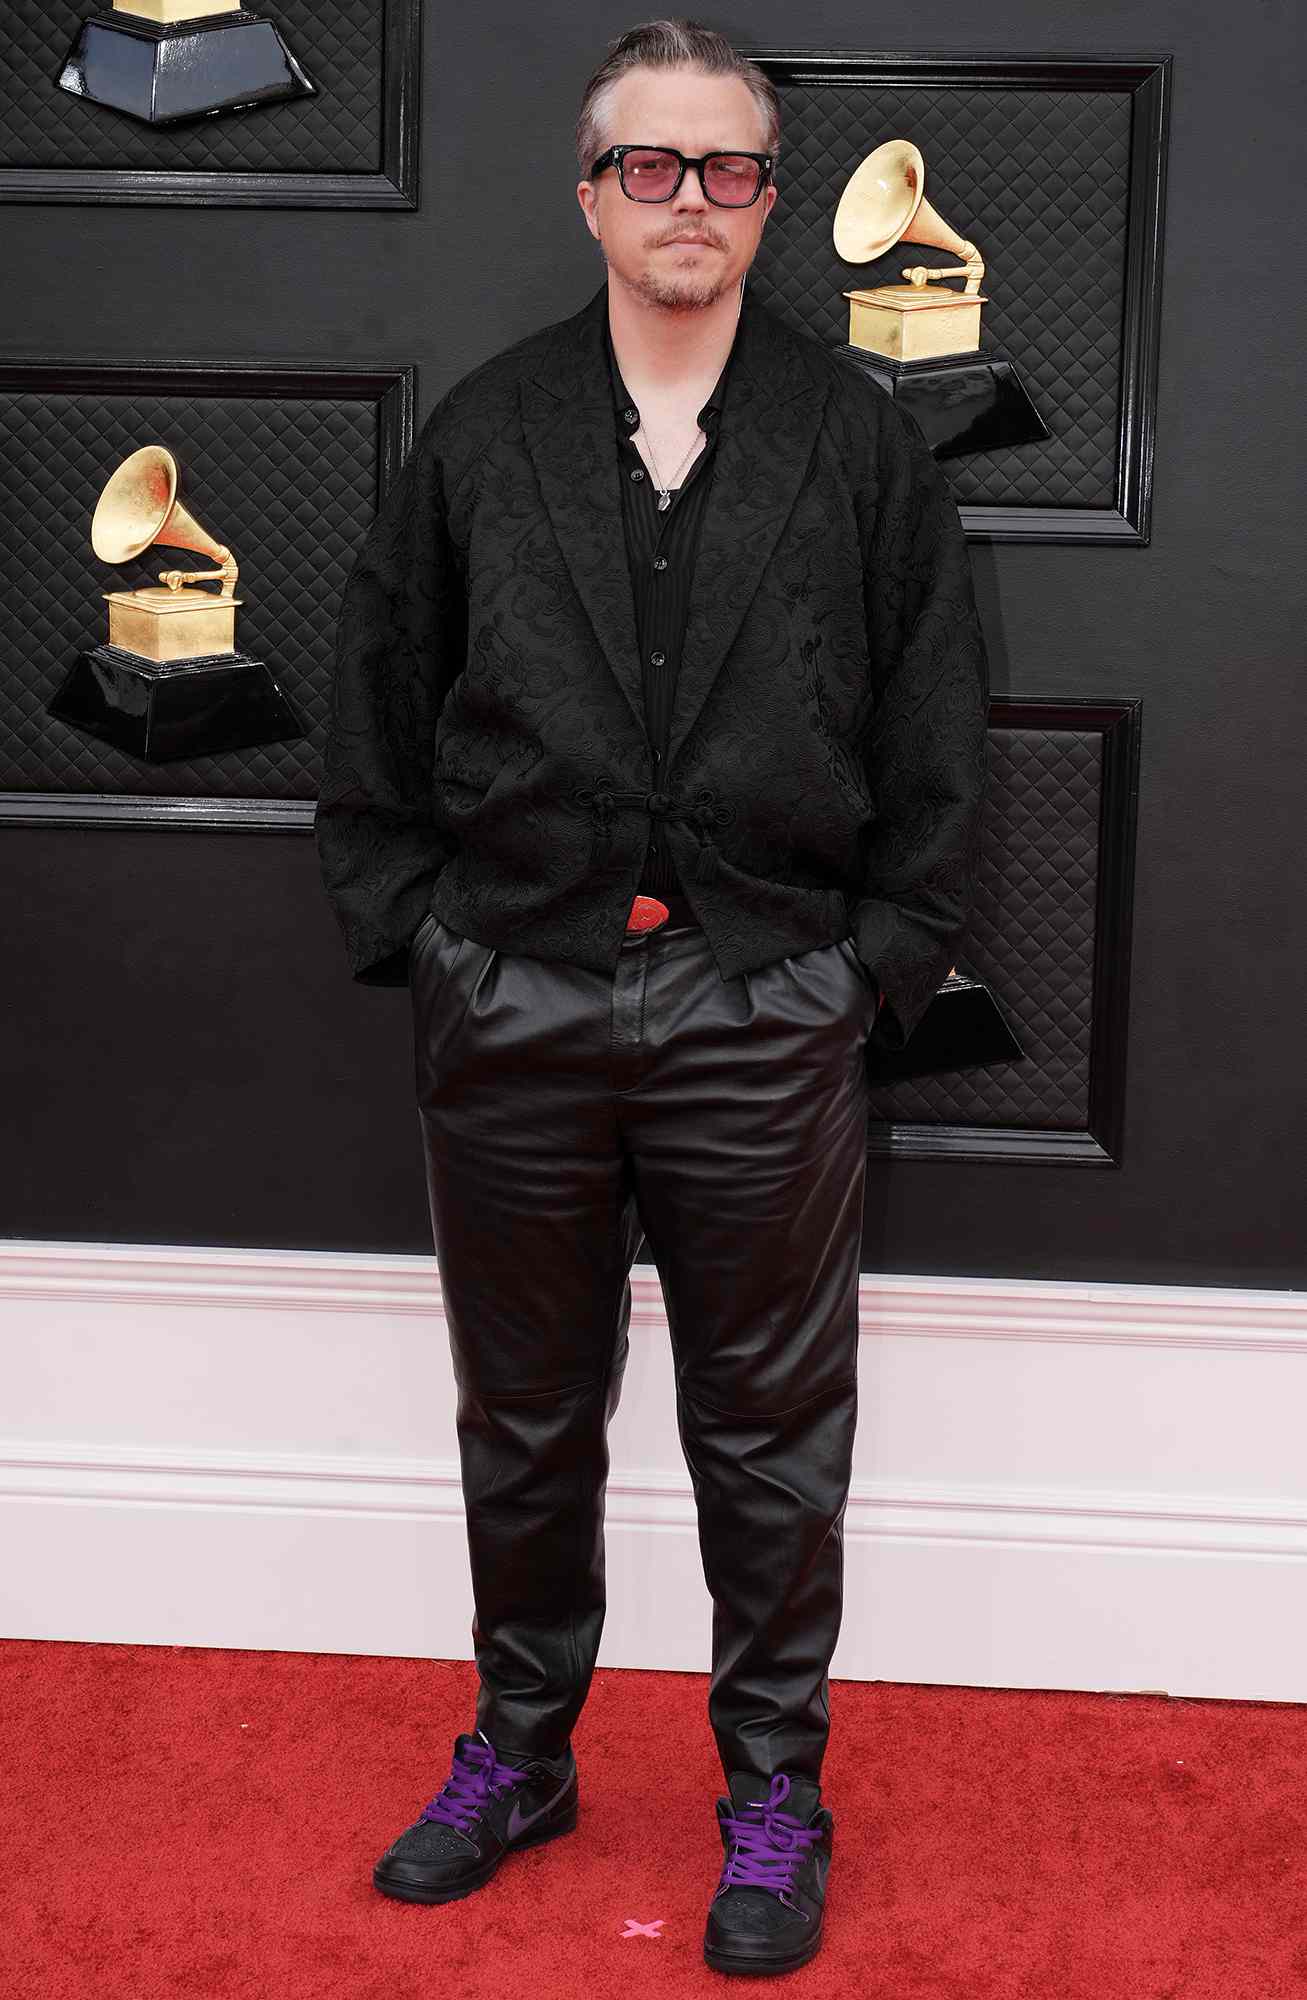 Grammys Awards Red Carpet Jason Isbell